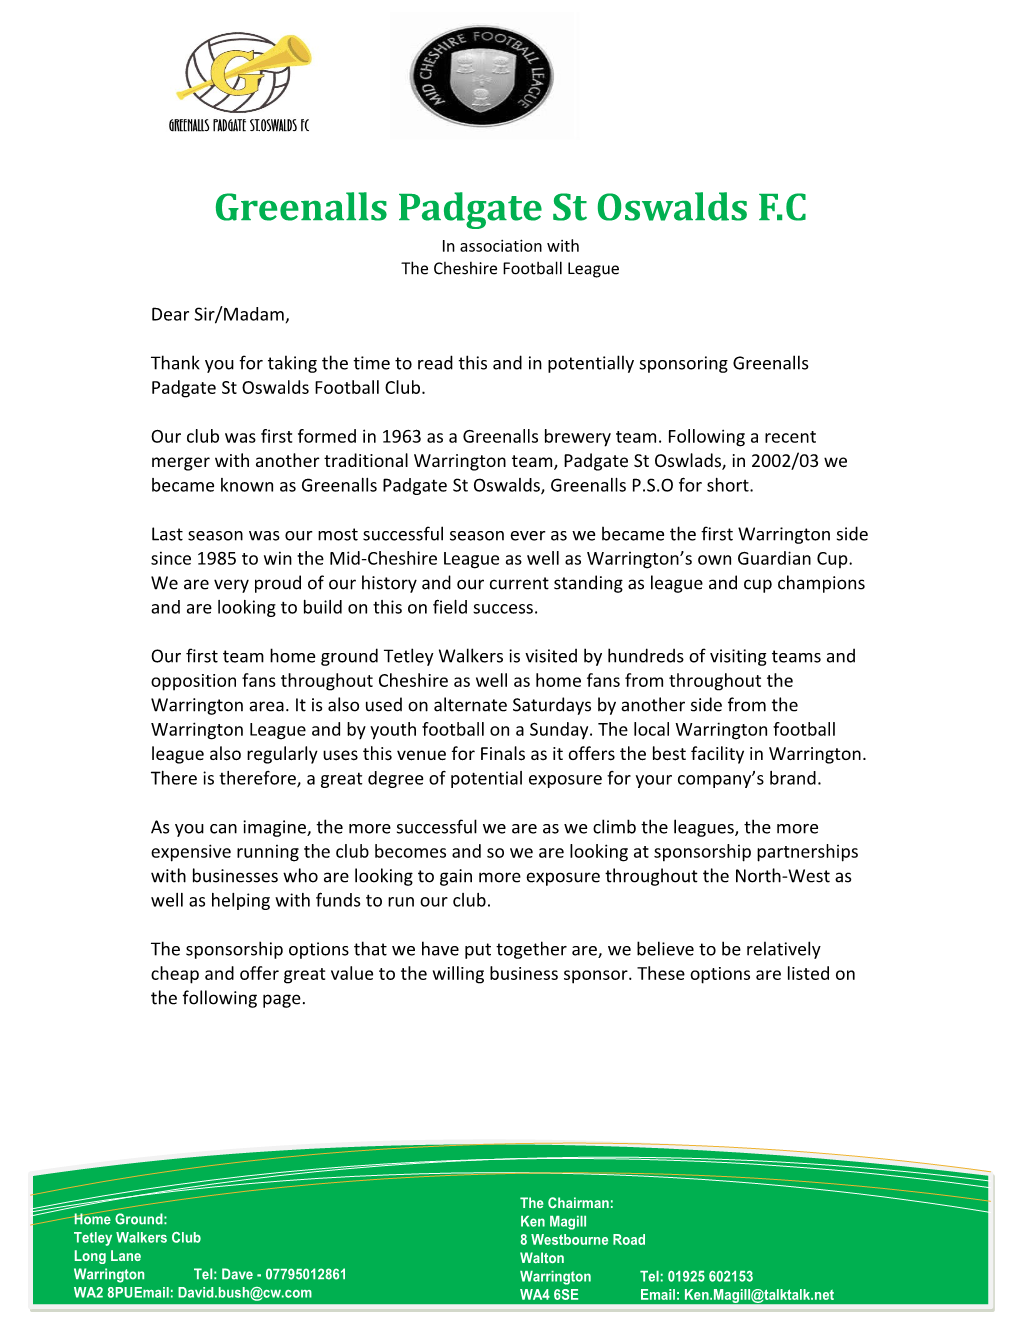 Greenalls Padgate St Oswalds F